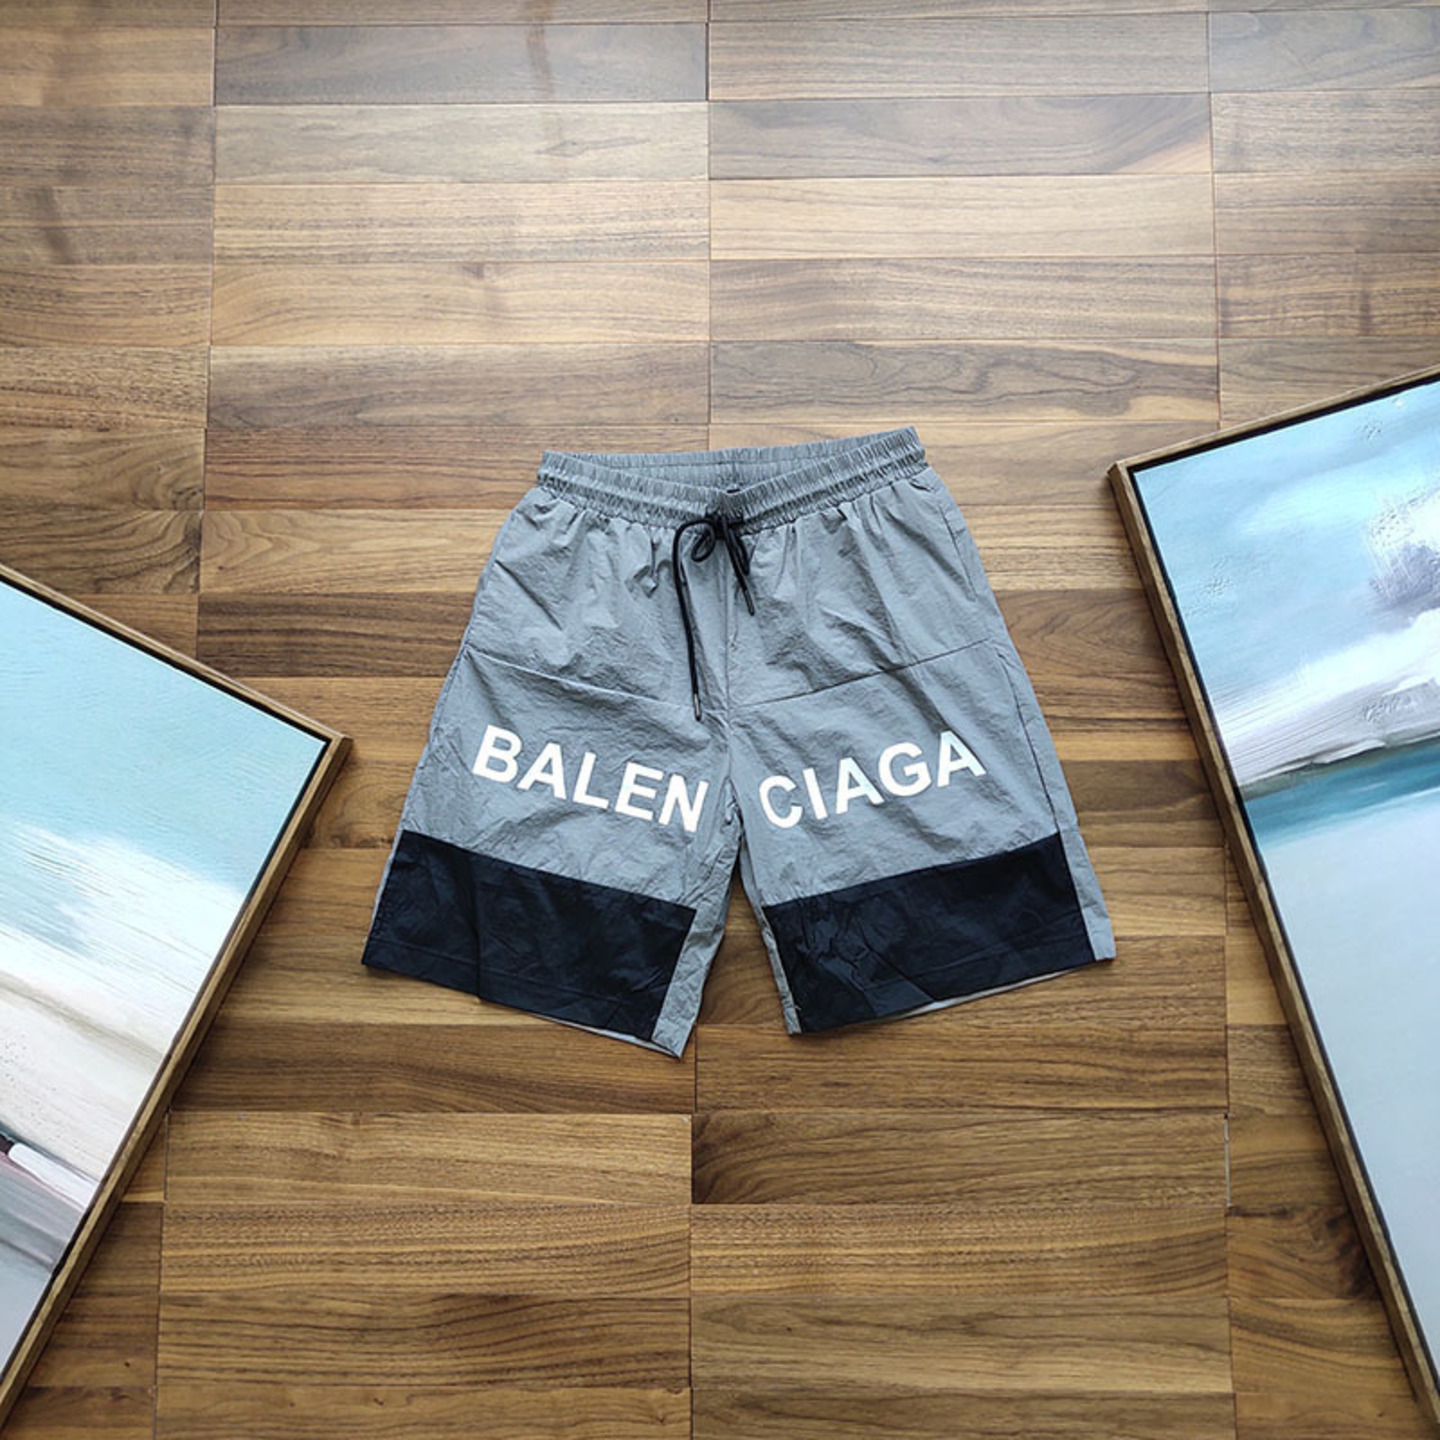 Balenciaga swim shorts